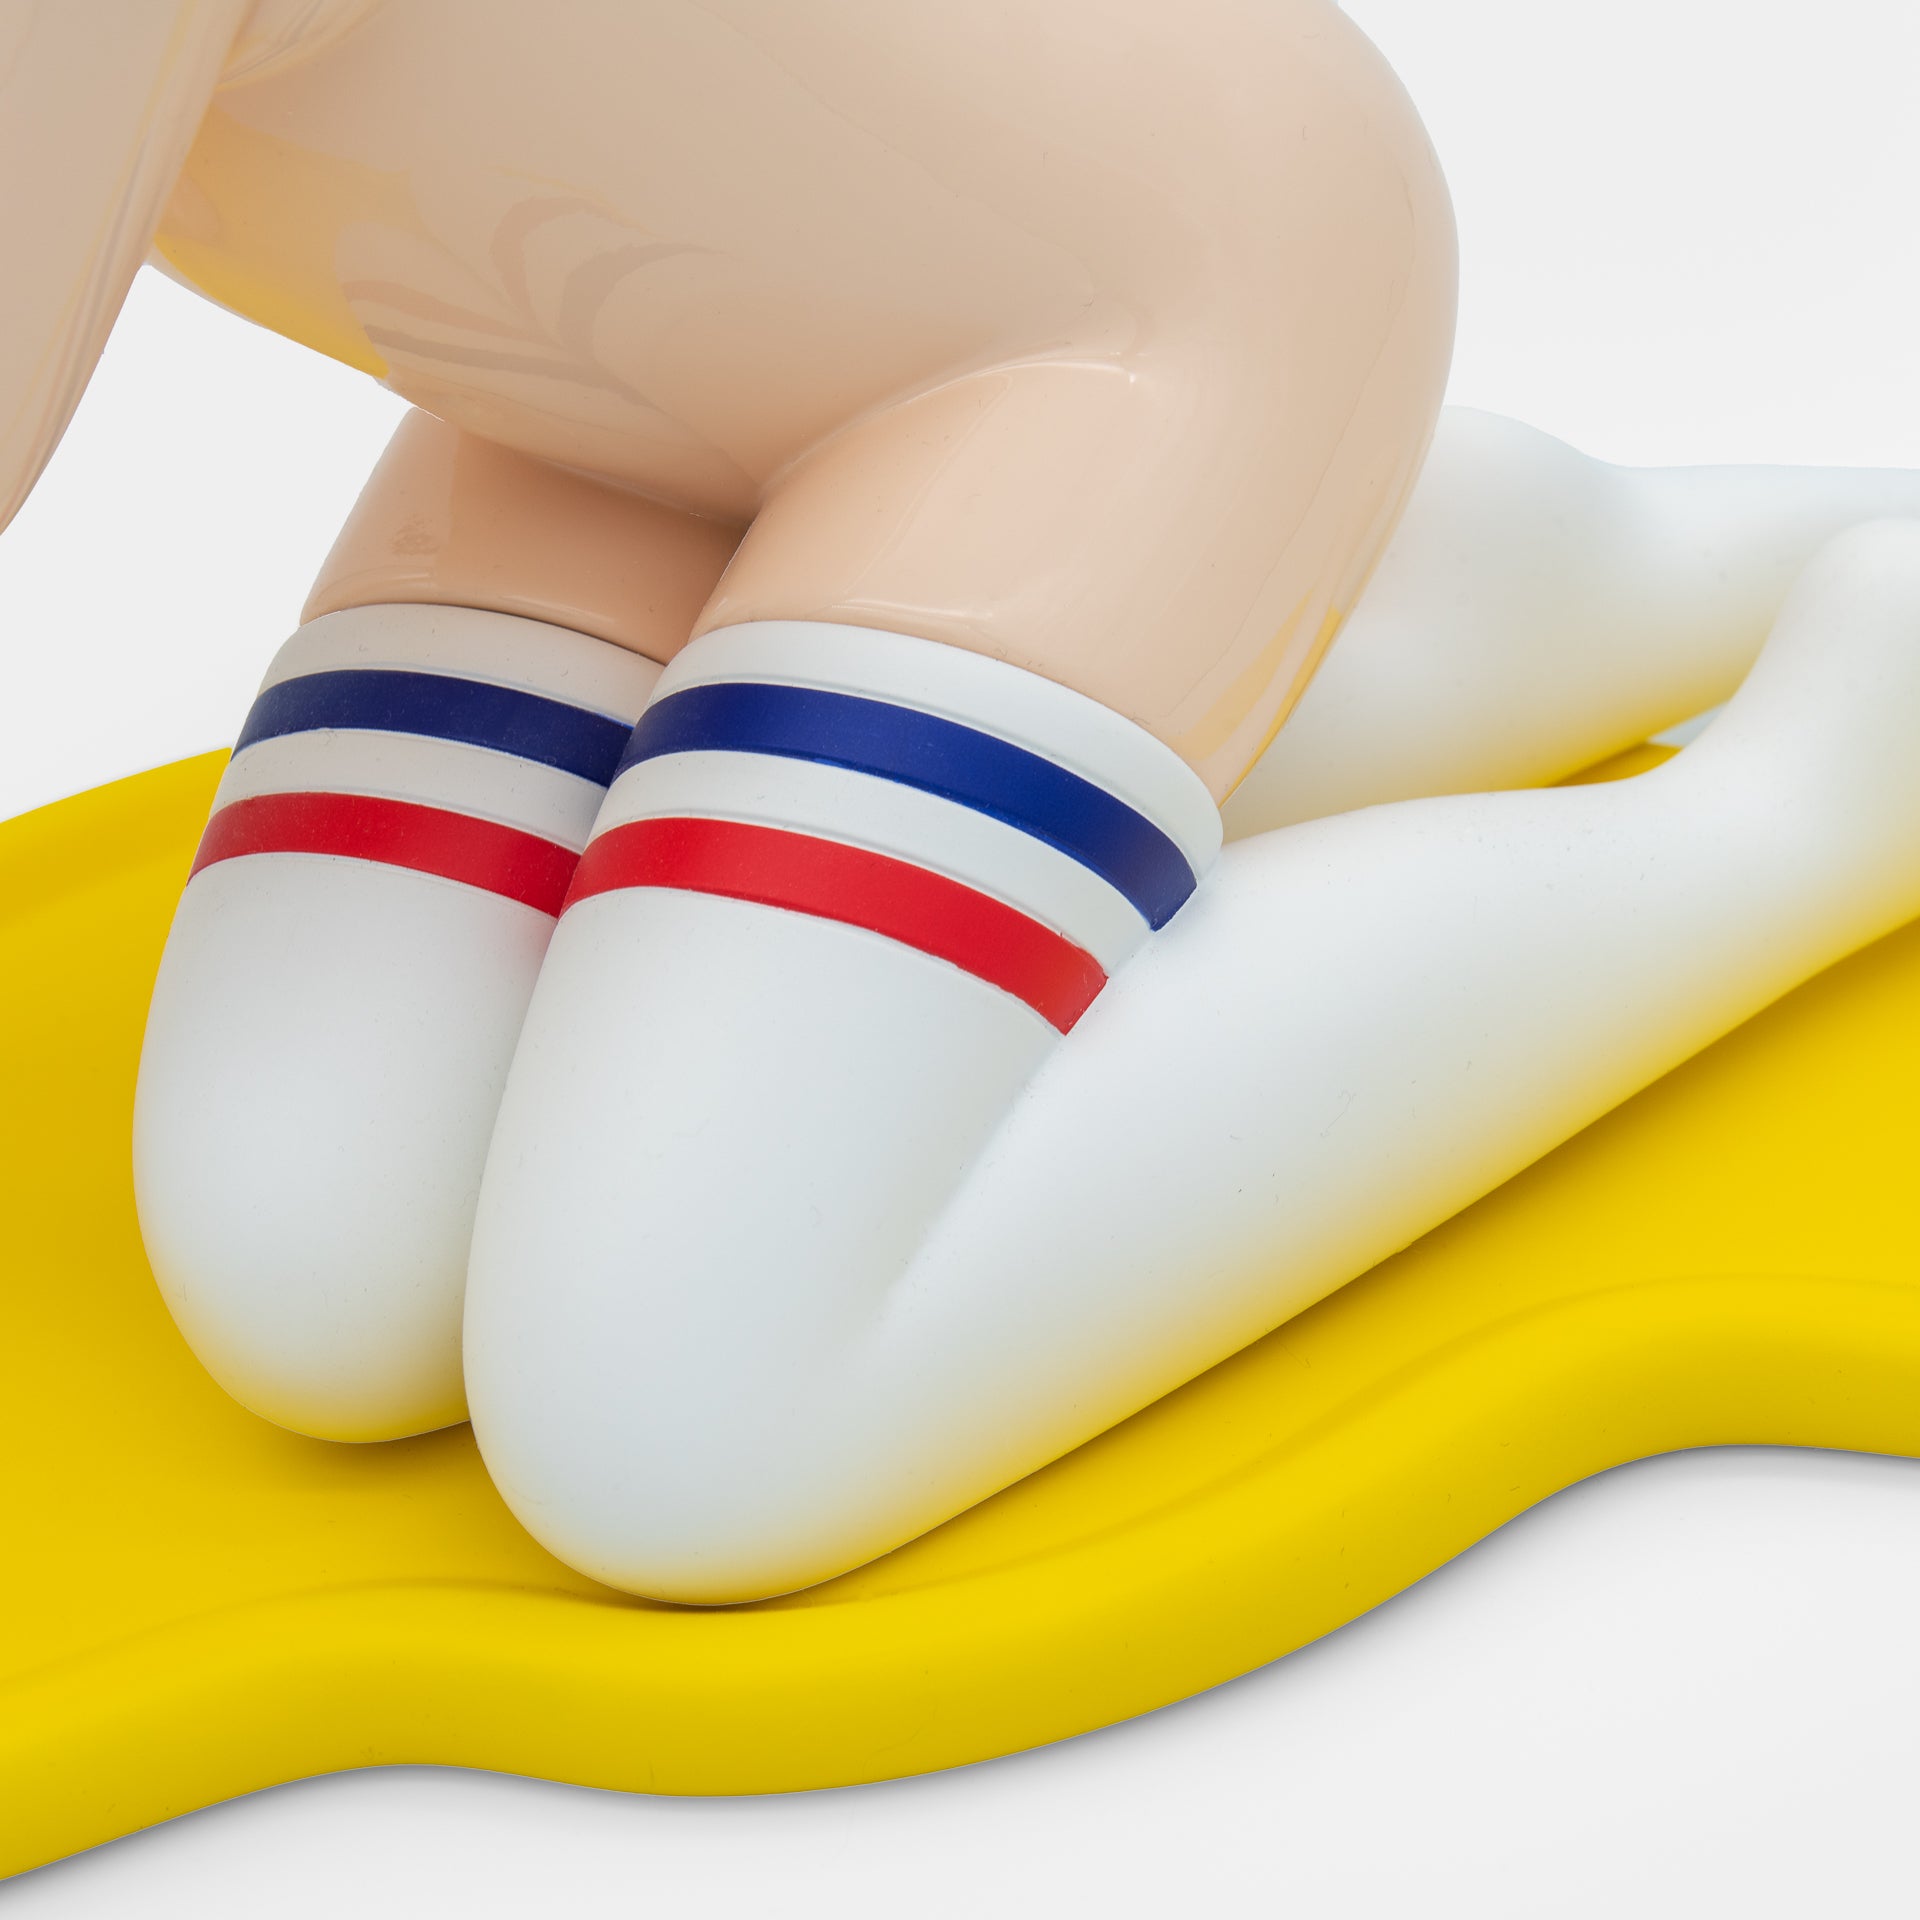 Venus with Socks – Things Gallery